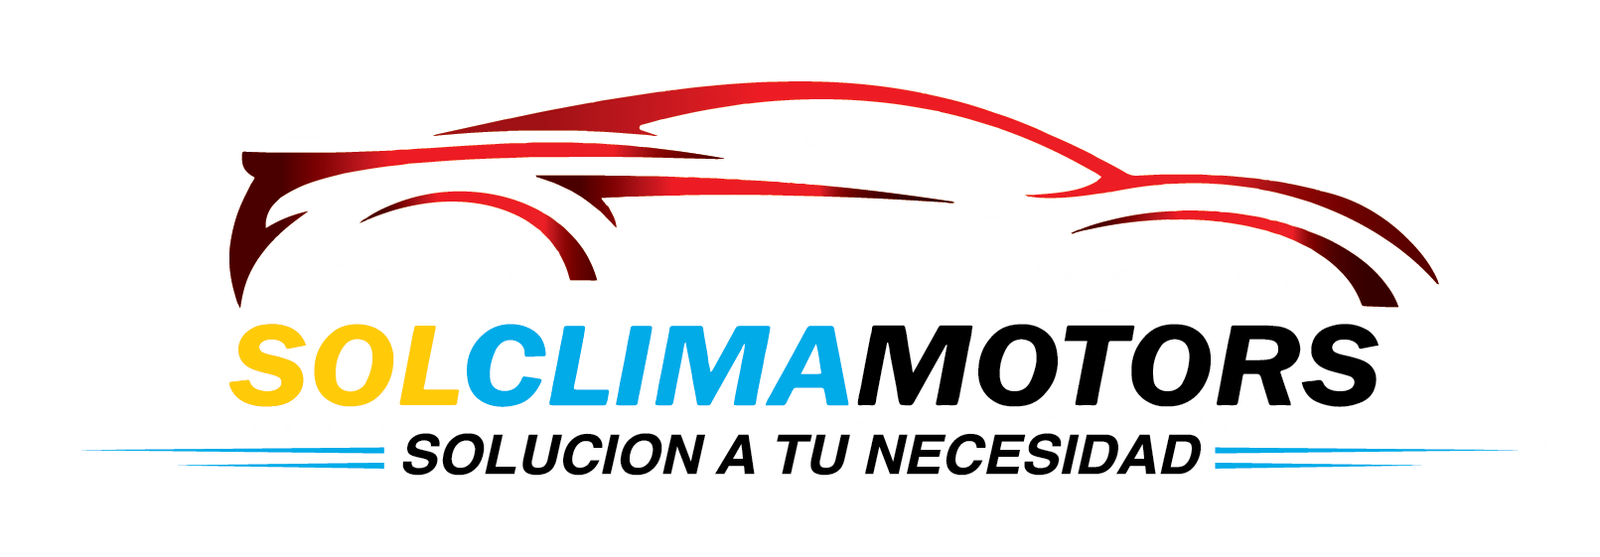 Logotipo Solclimamotors_v